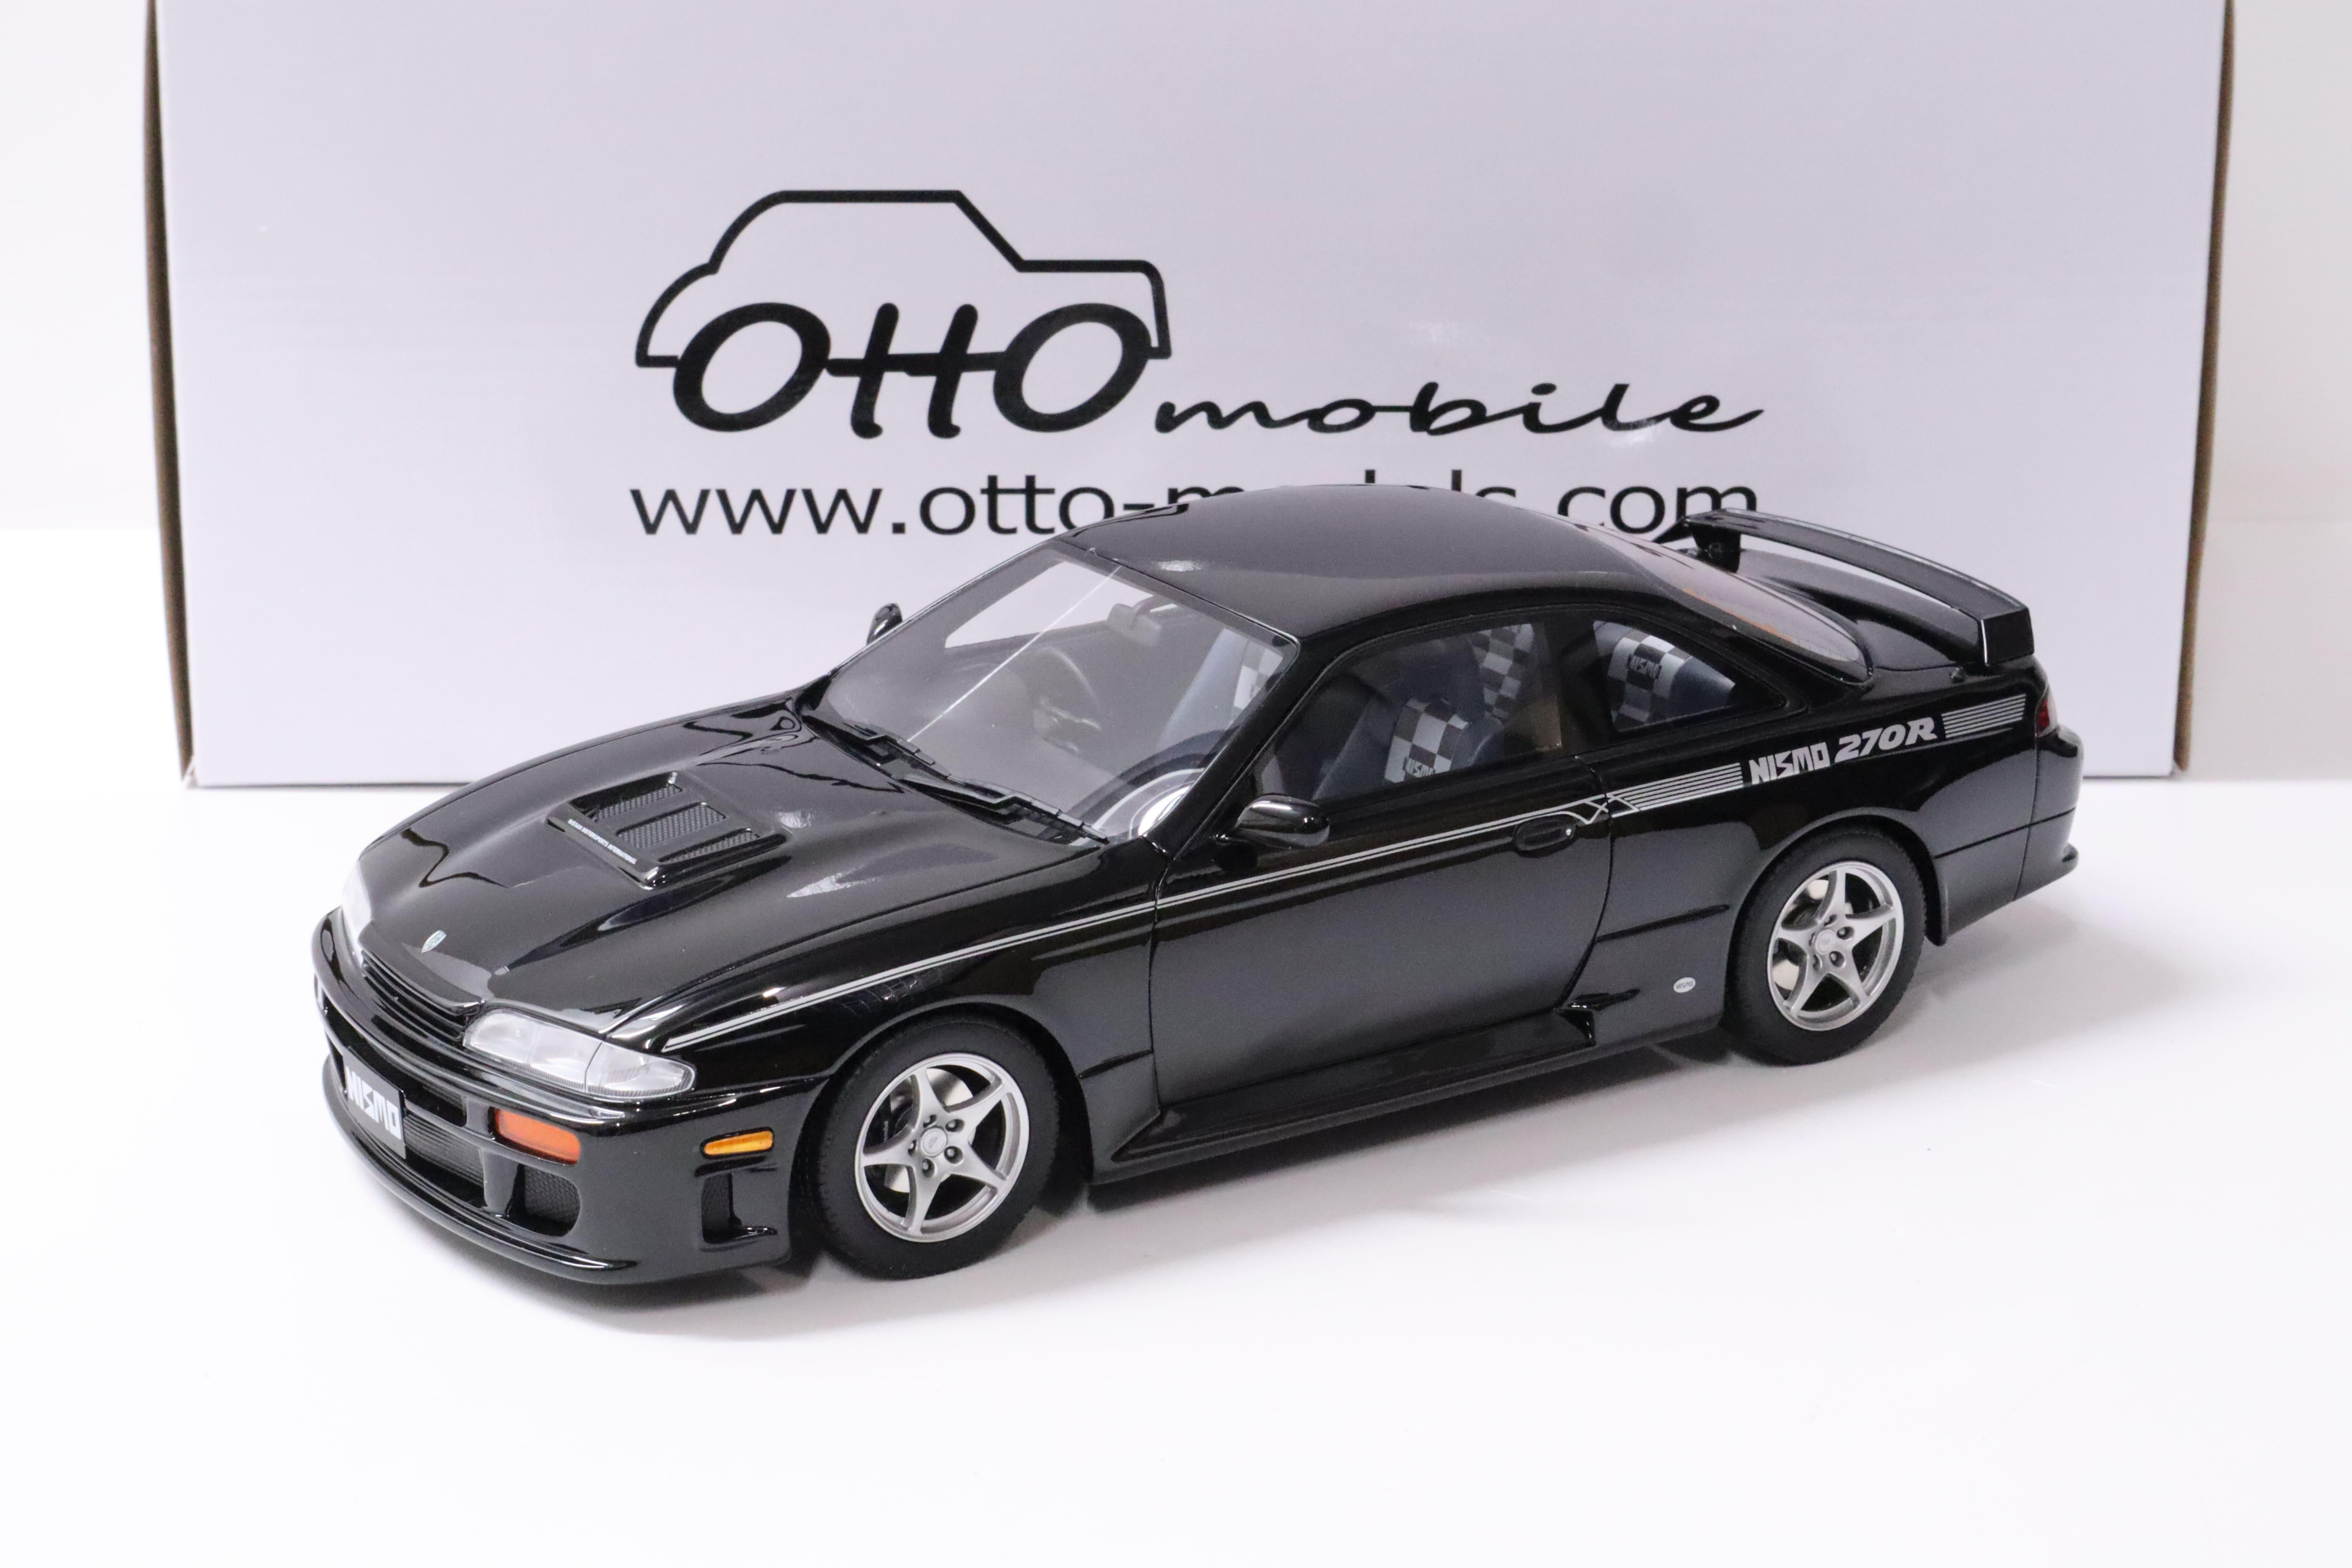 1:18 OTTO mobile OT847 Nissan Silvia (S14) 270R Nismo black 1994